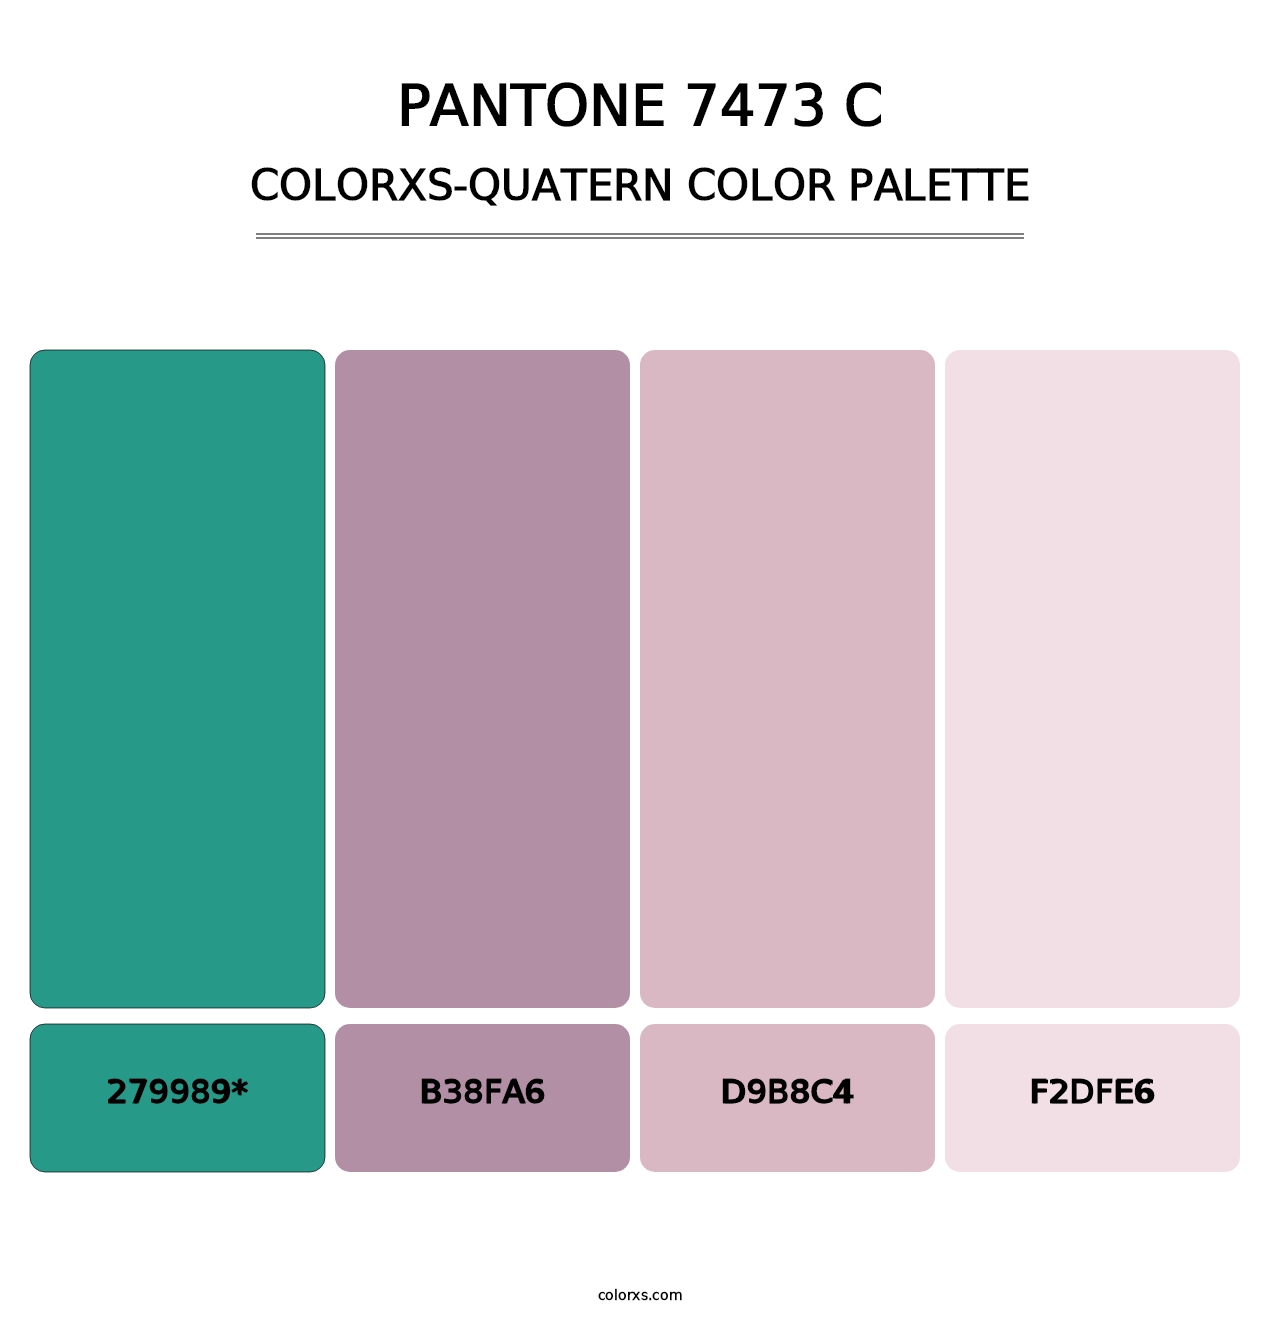 PANTONE 7473 C - Colorxs Quatern Palette